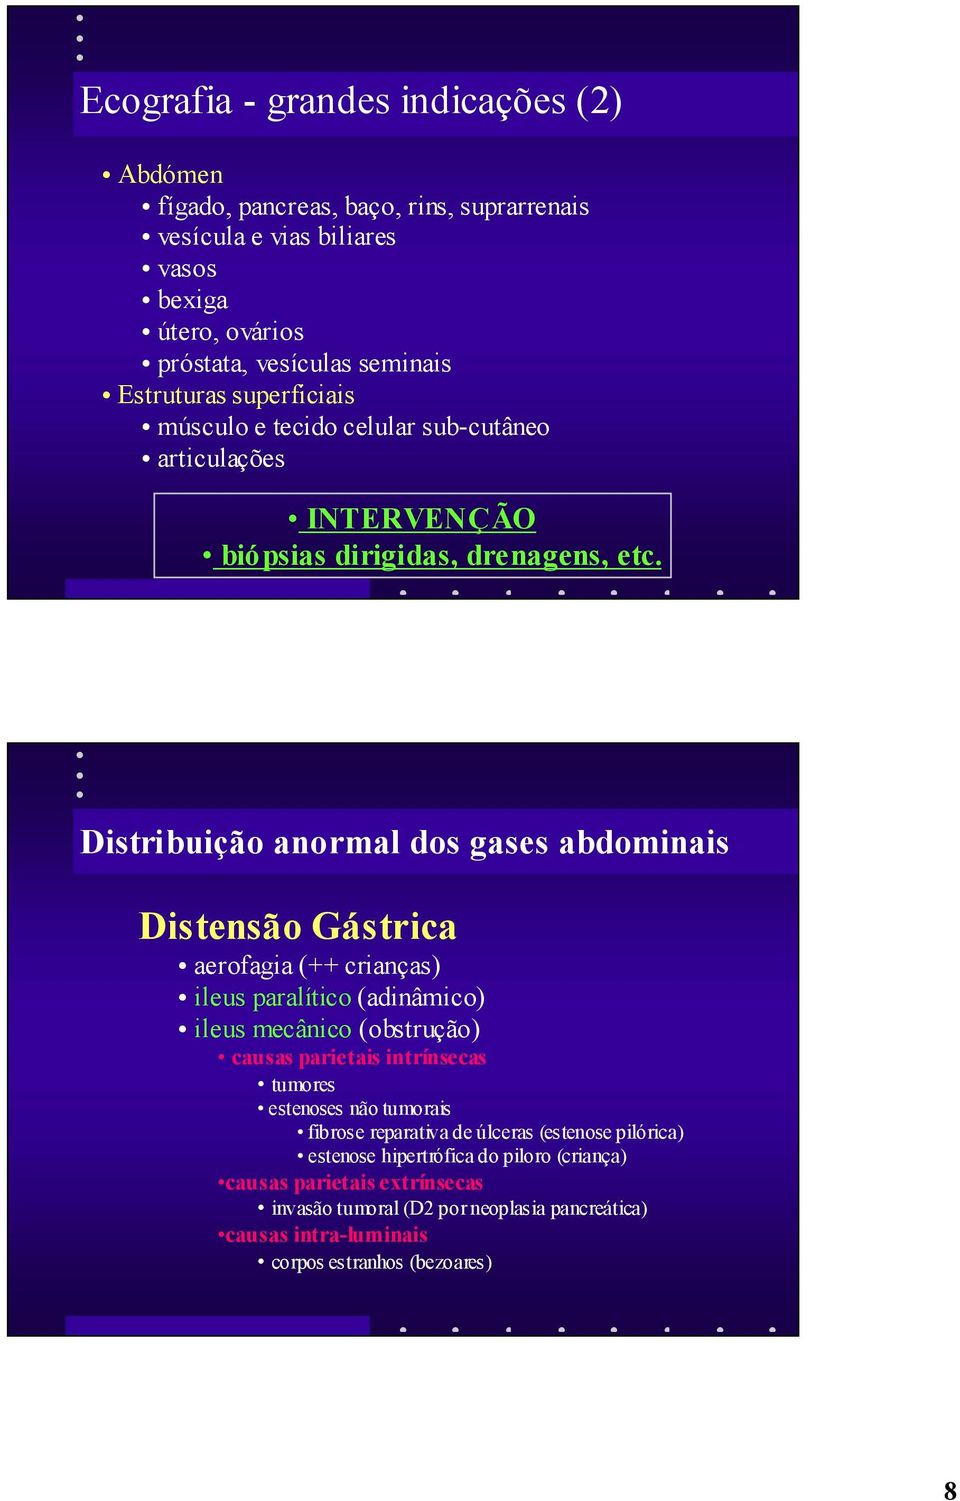 Distribuição anormal dos gases abdominais Distensão Gástrica aerofagia (++ crianças) ileus paralítico (adinâmico) ileus mecânico (obstrução) causas parietais intrínsecas